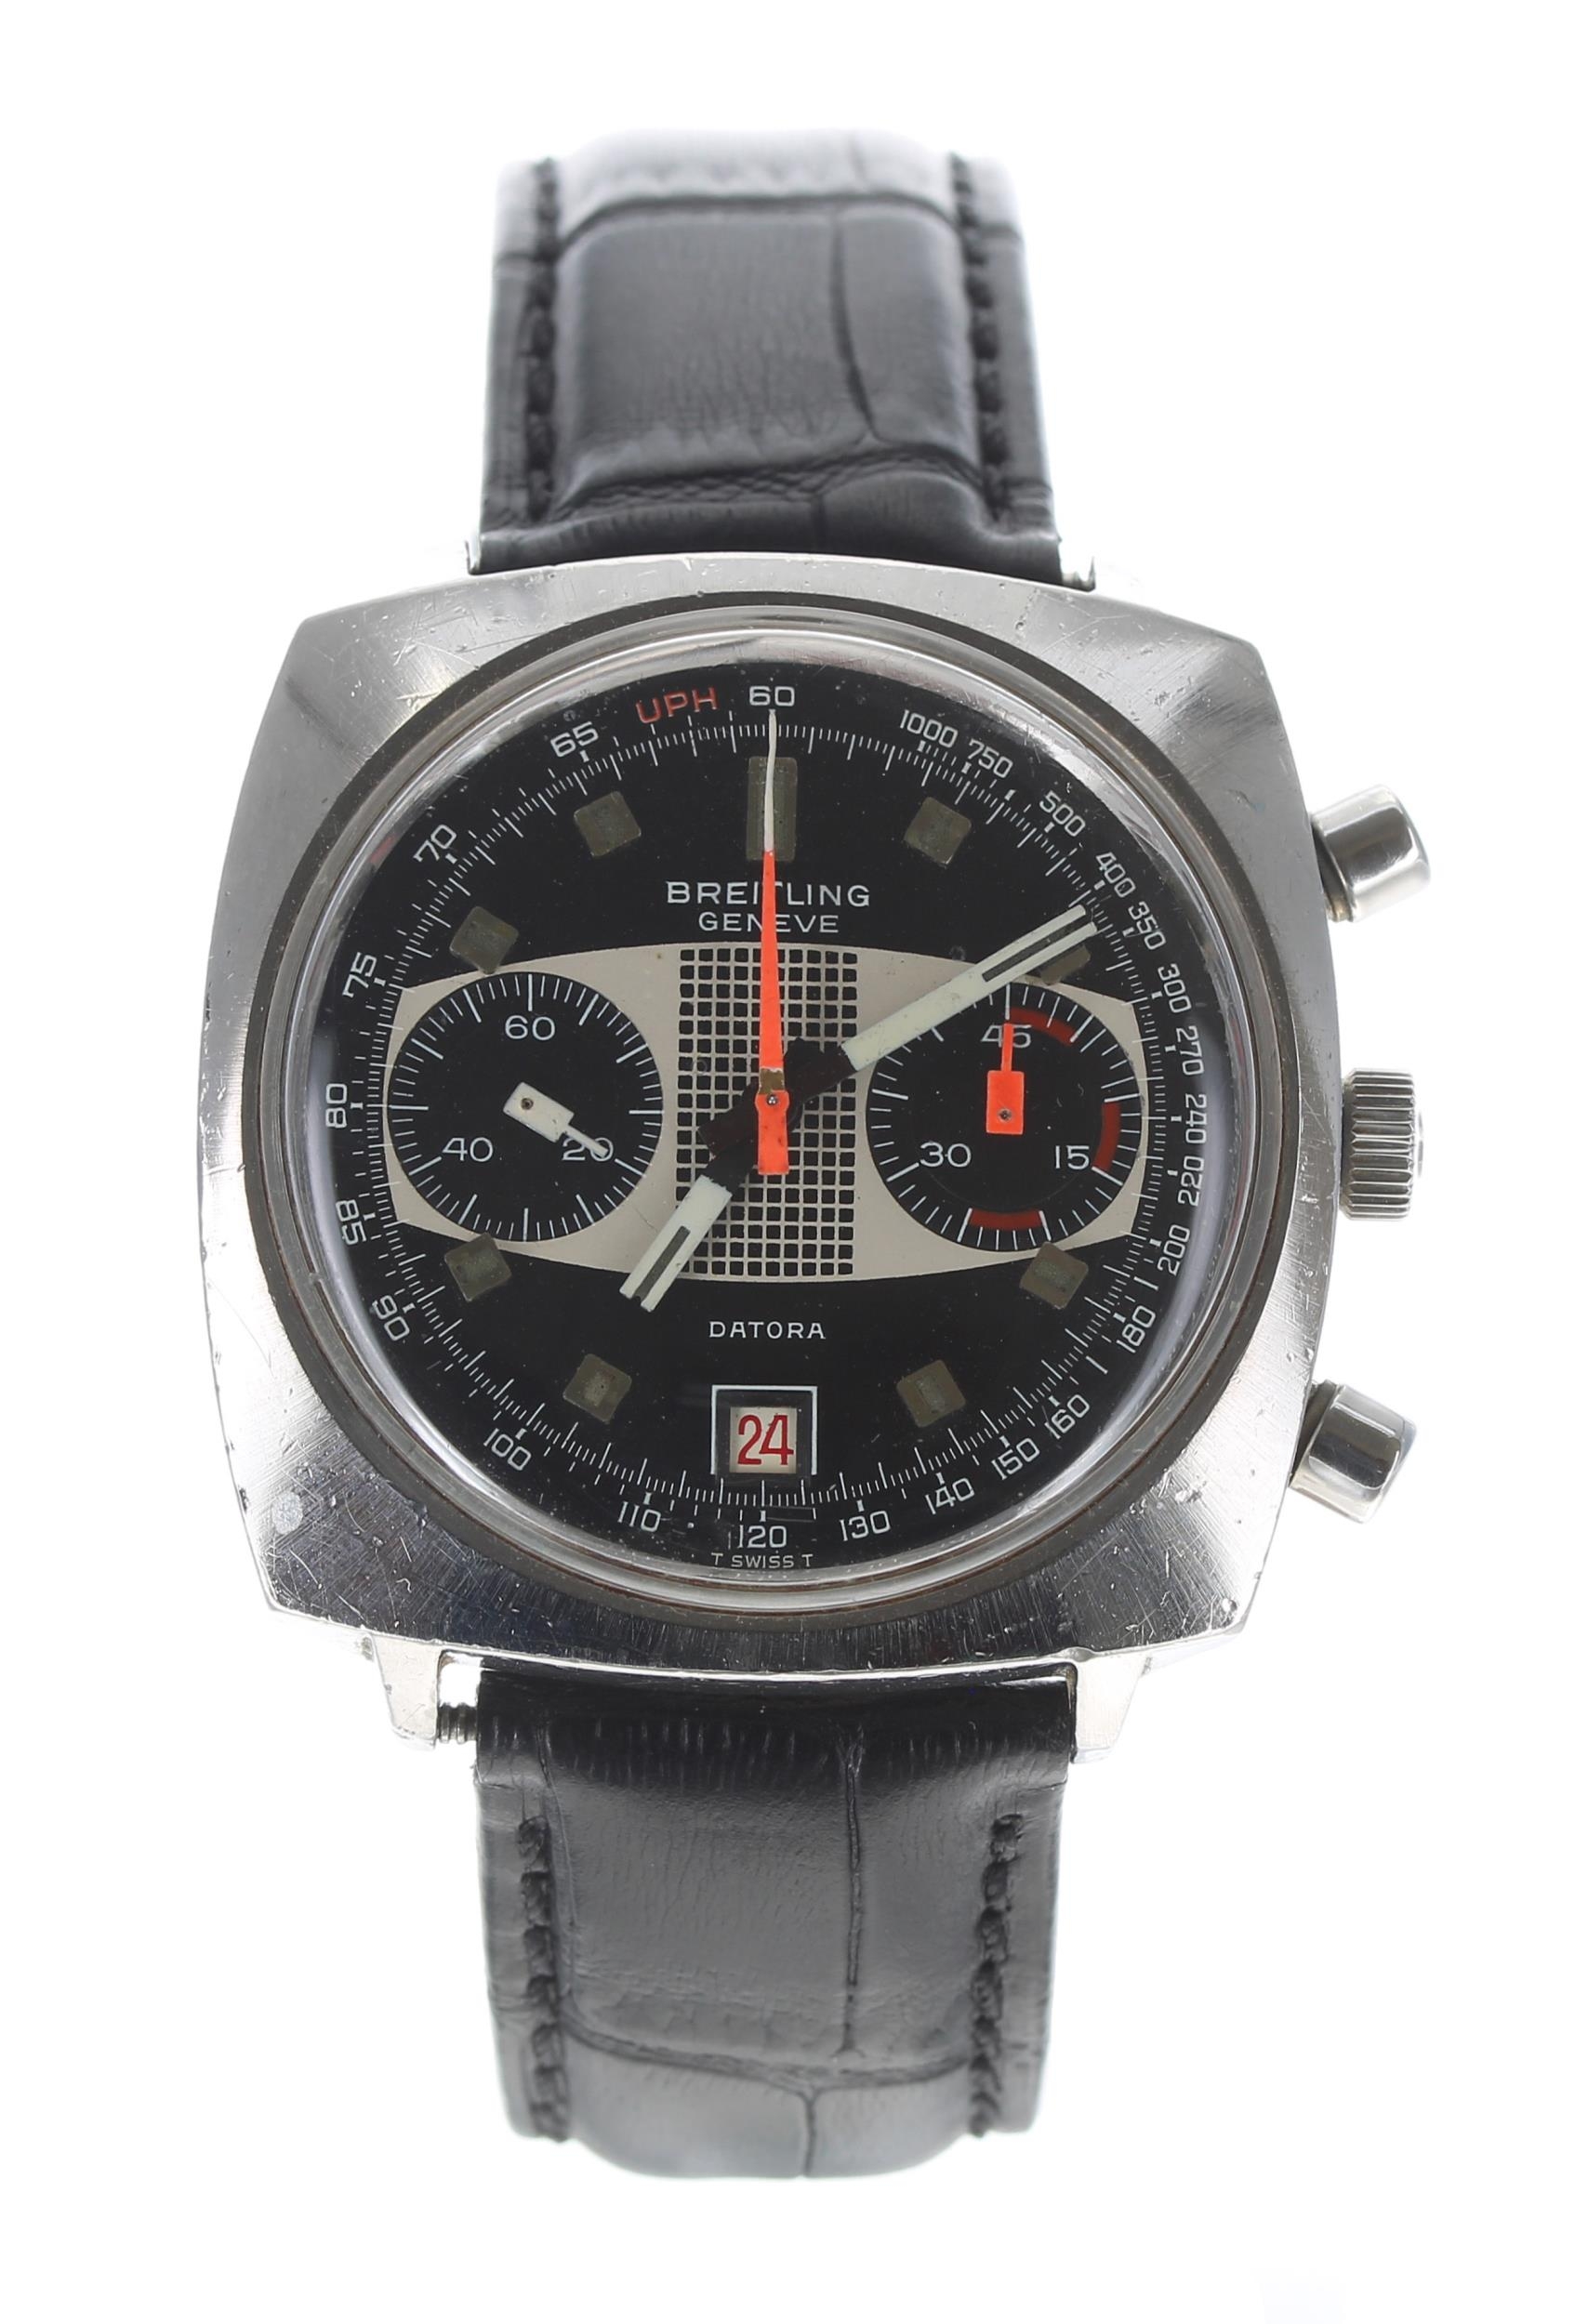 Breitling Genéve Datora chronograph squared cased stainless steel gentleman's wristwatch,